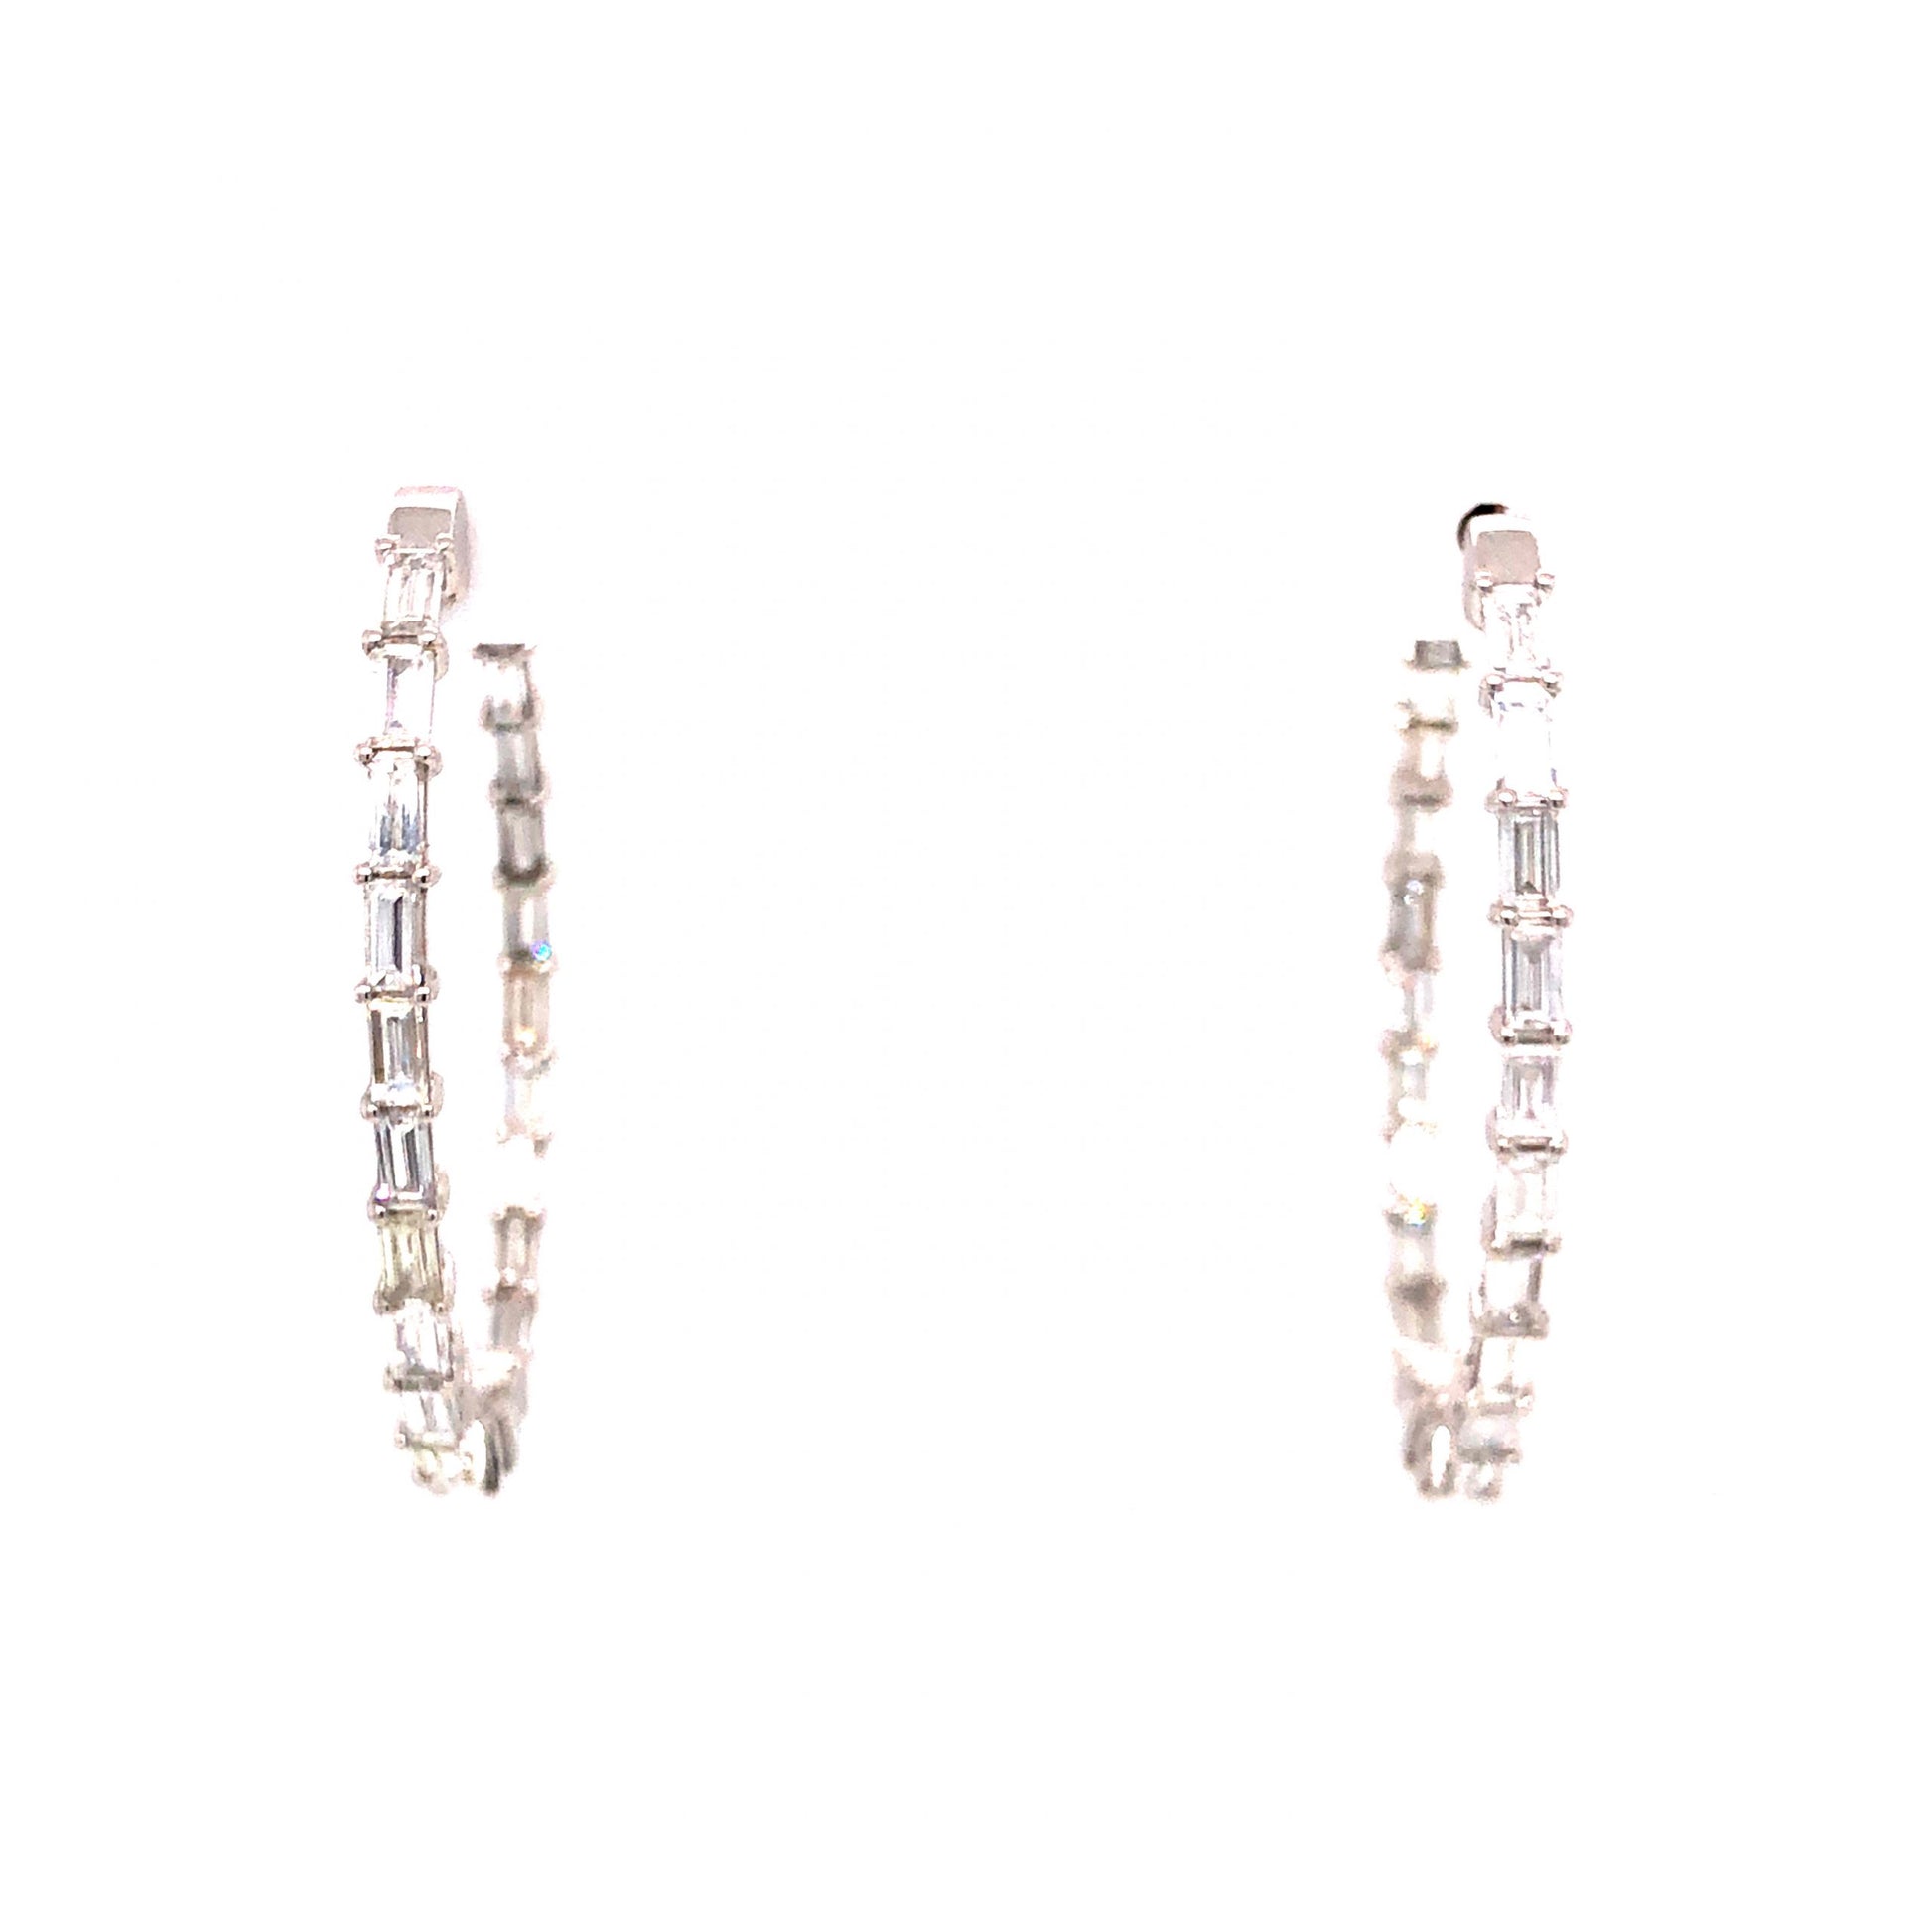 3.62 Baguette Cut Diamond Hoop Earrings in 18k White Gold